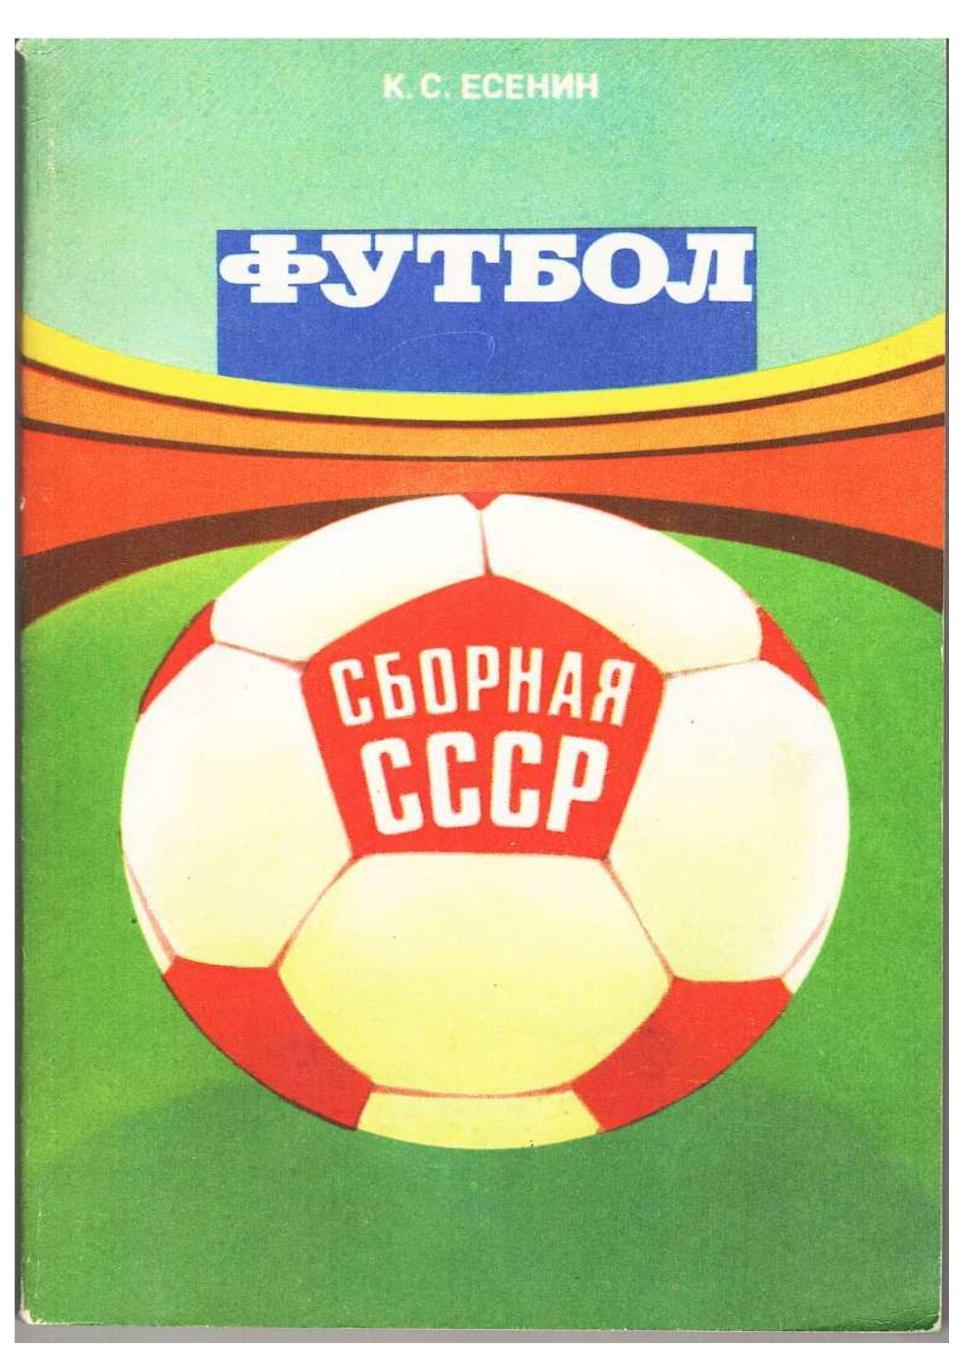 К.С. Есенин. Футбол. Сборная СССР. Москва, 1983.